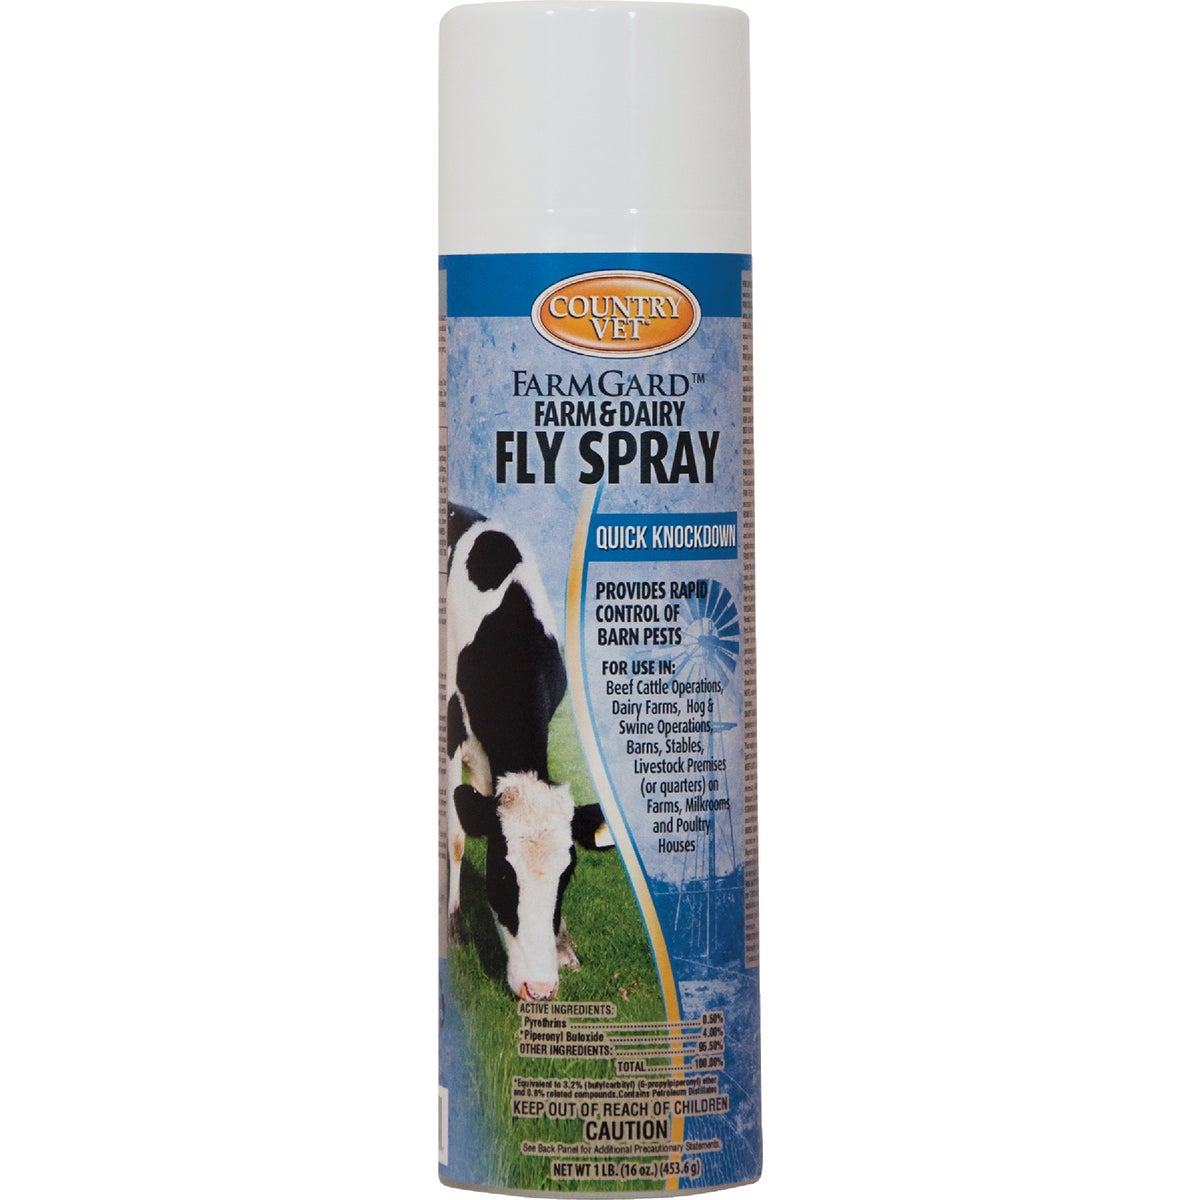 Item 702321, Farm and dairy fly spray.